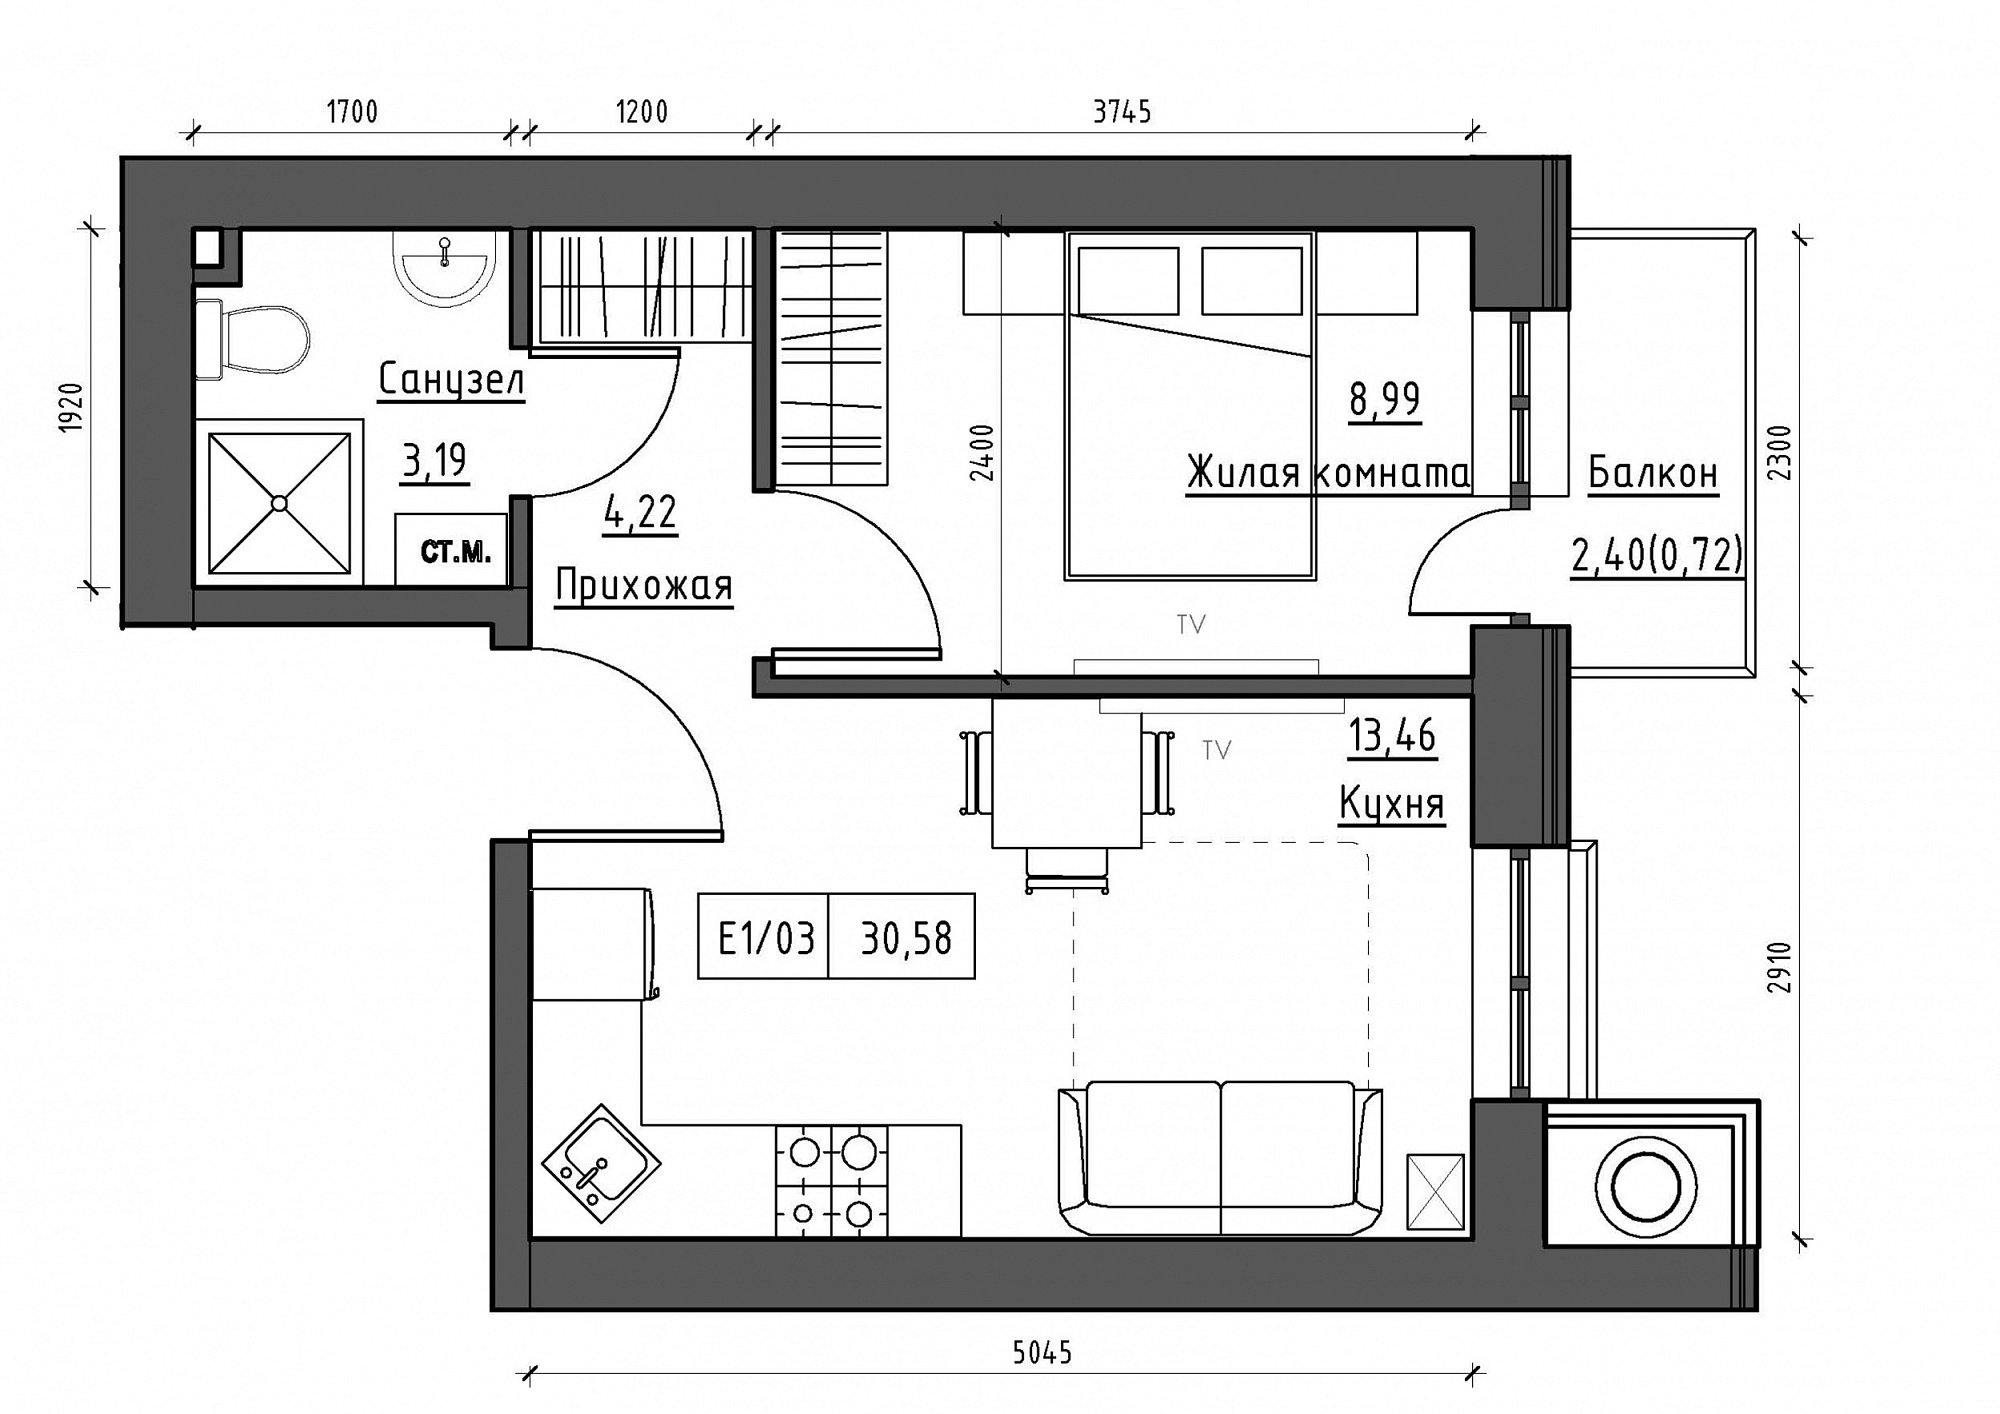 Планування 1-к квартира площею 30.58м2, KS-012-03/0013.